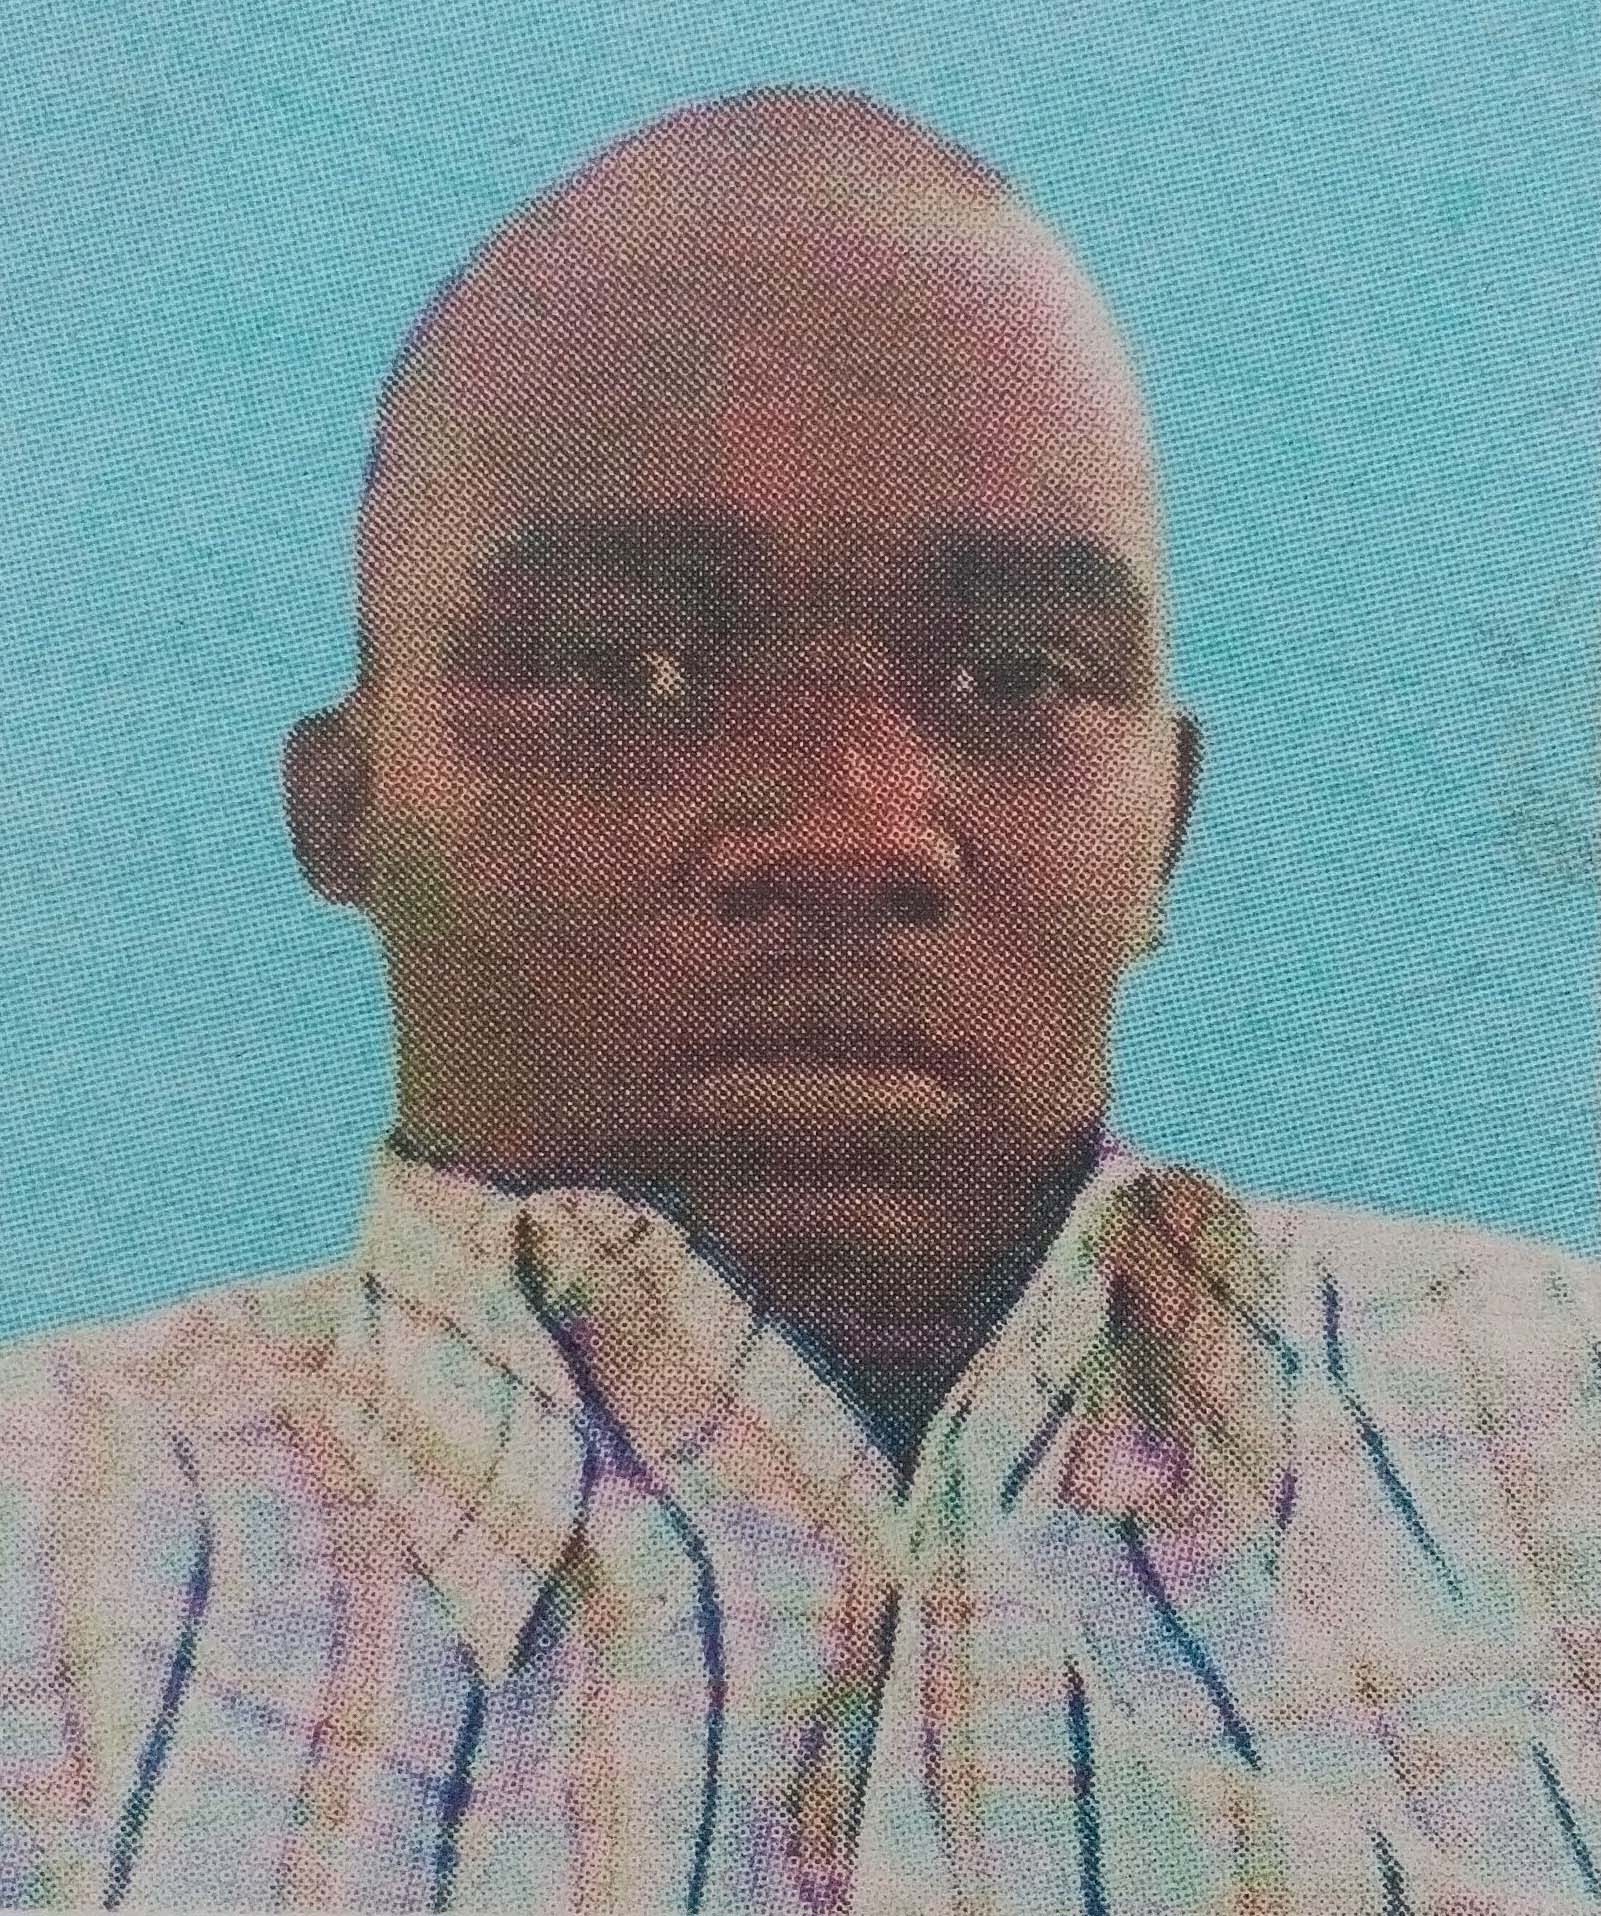 Obituary Image of Fredrick Musembi Muia